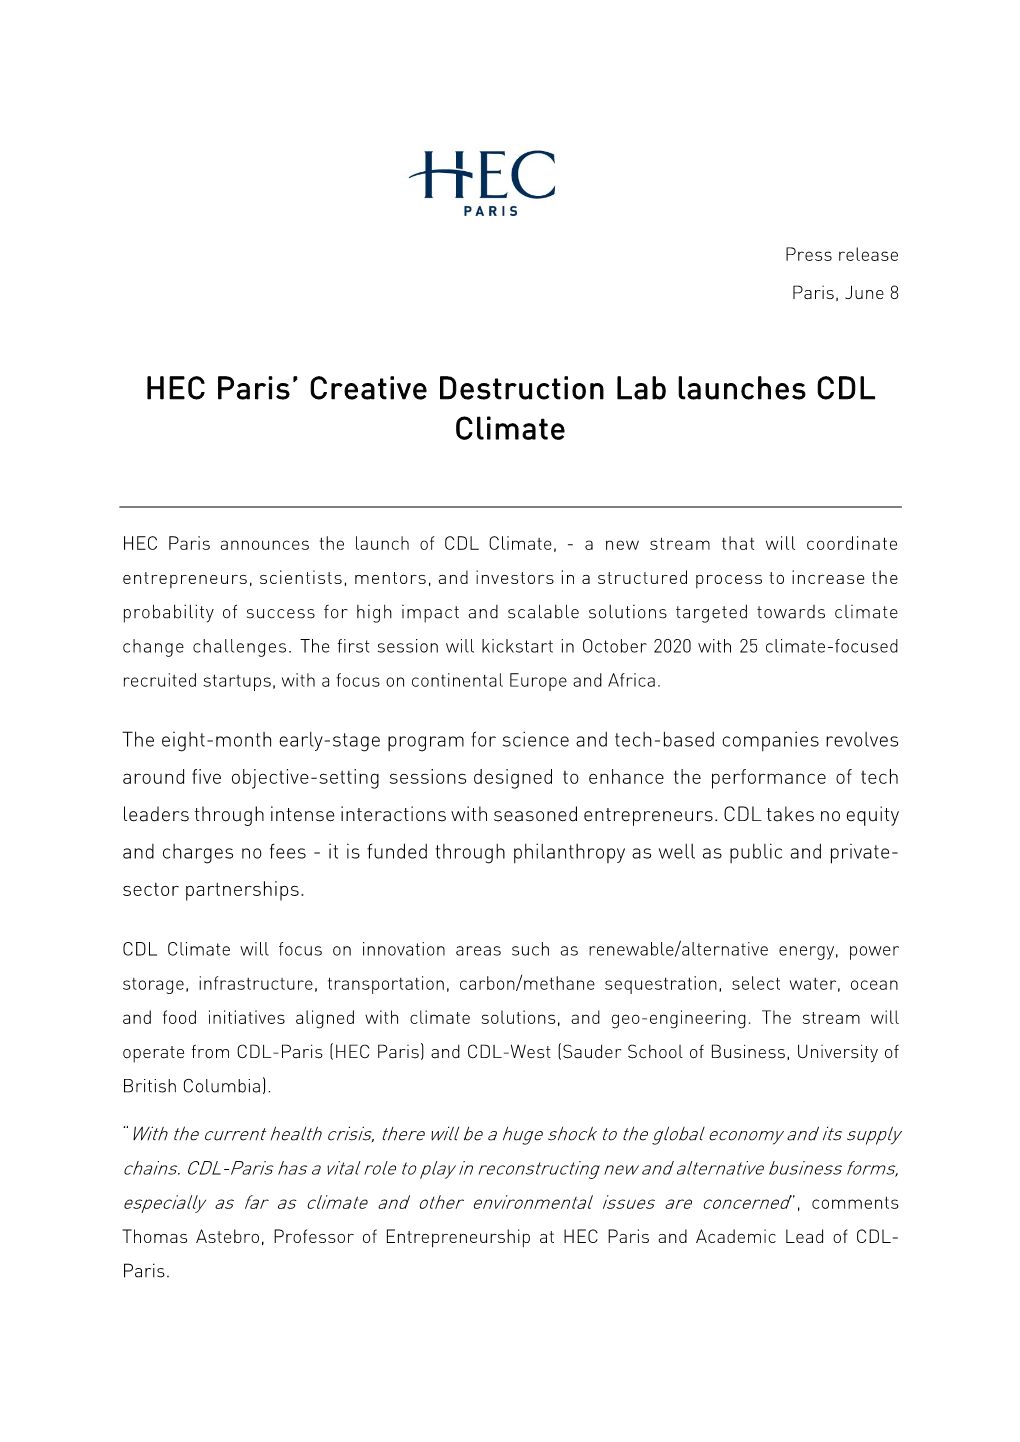 HEC Paris' Creative Destruction Lab Launches CDL Climate